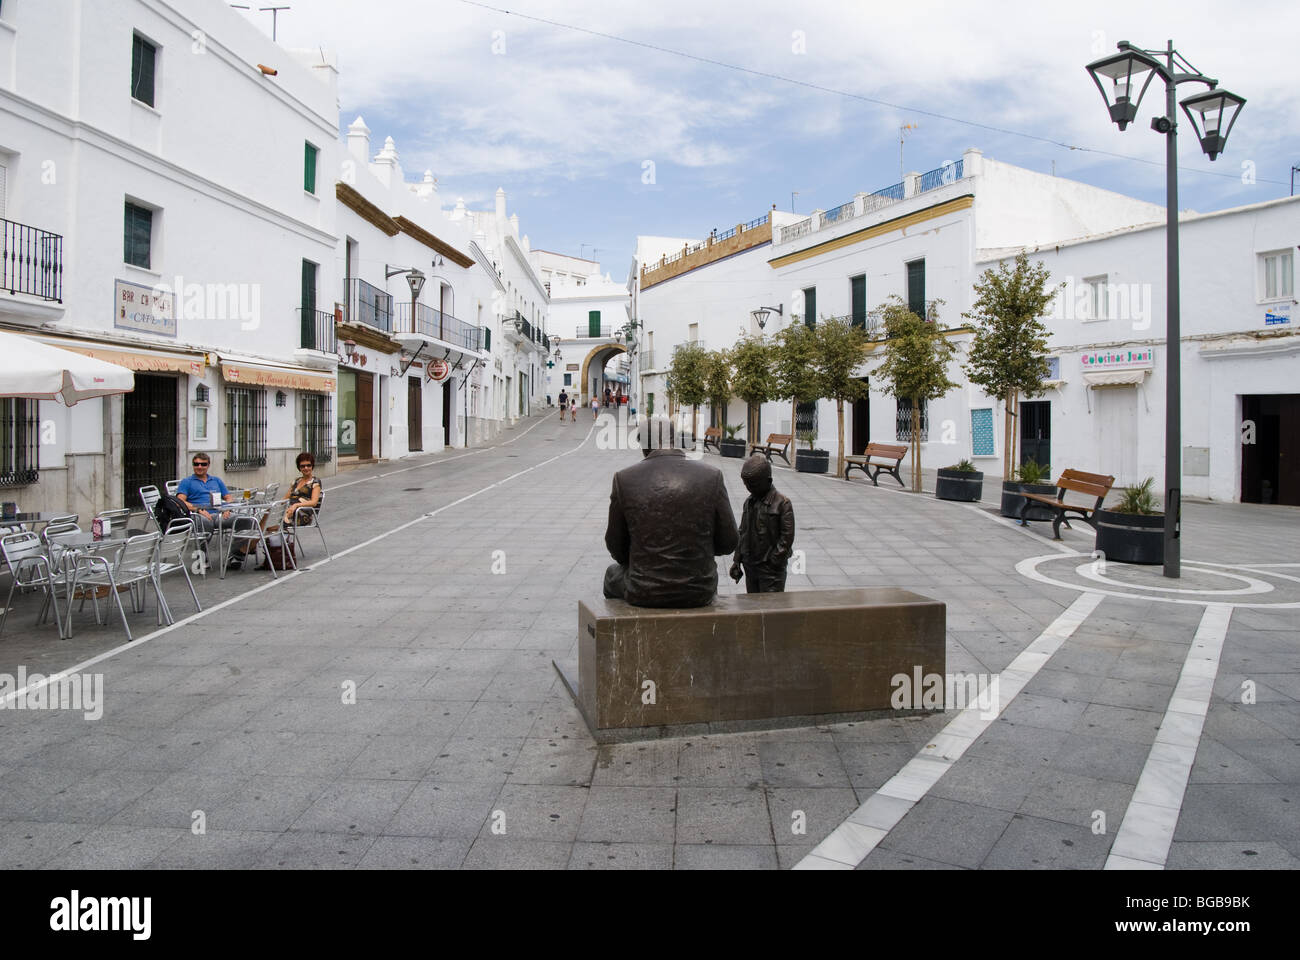 Square in Conil De La Frontera, White Town in Costa De La Luz, Cadiz  Province, Editorial Photo - Image of town, outdoors: 177854501